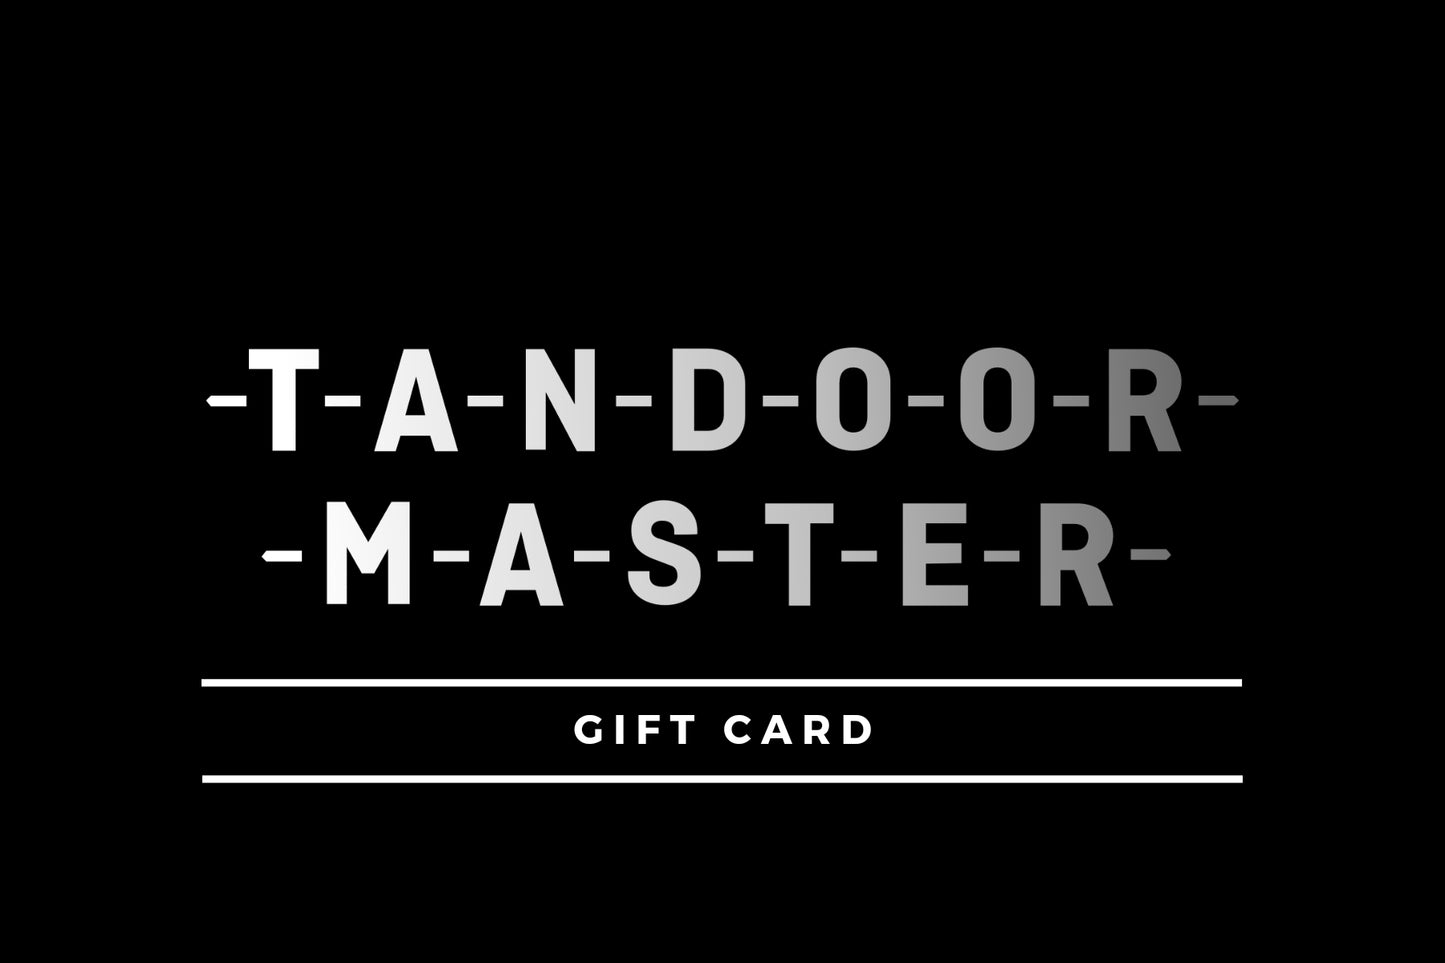 Tandoor Master Gift Card